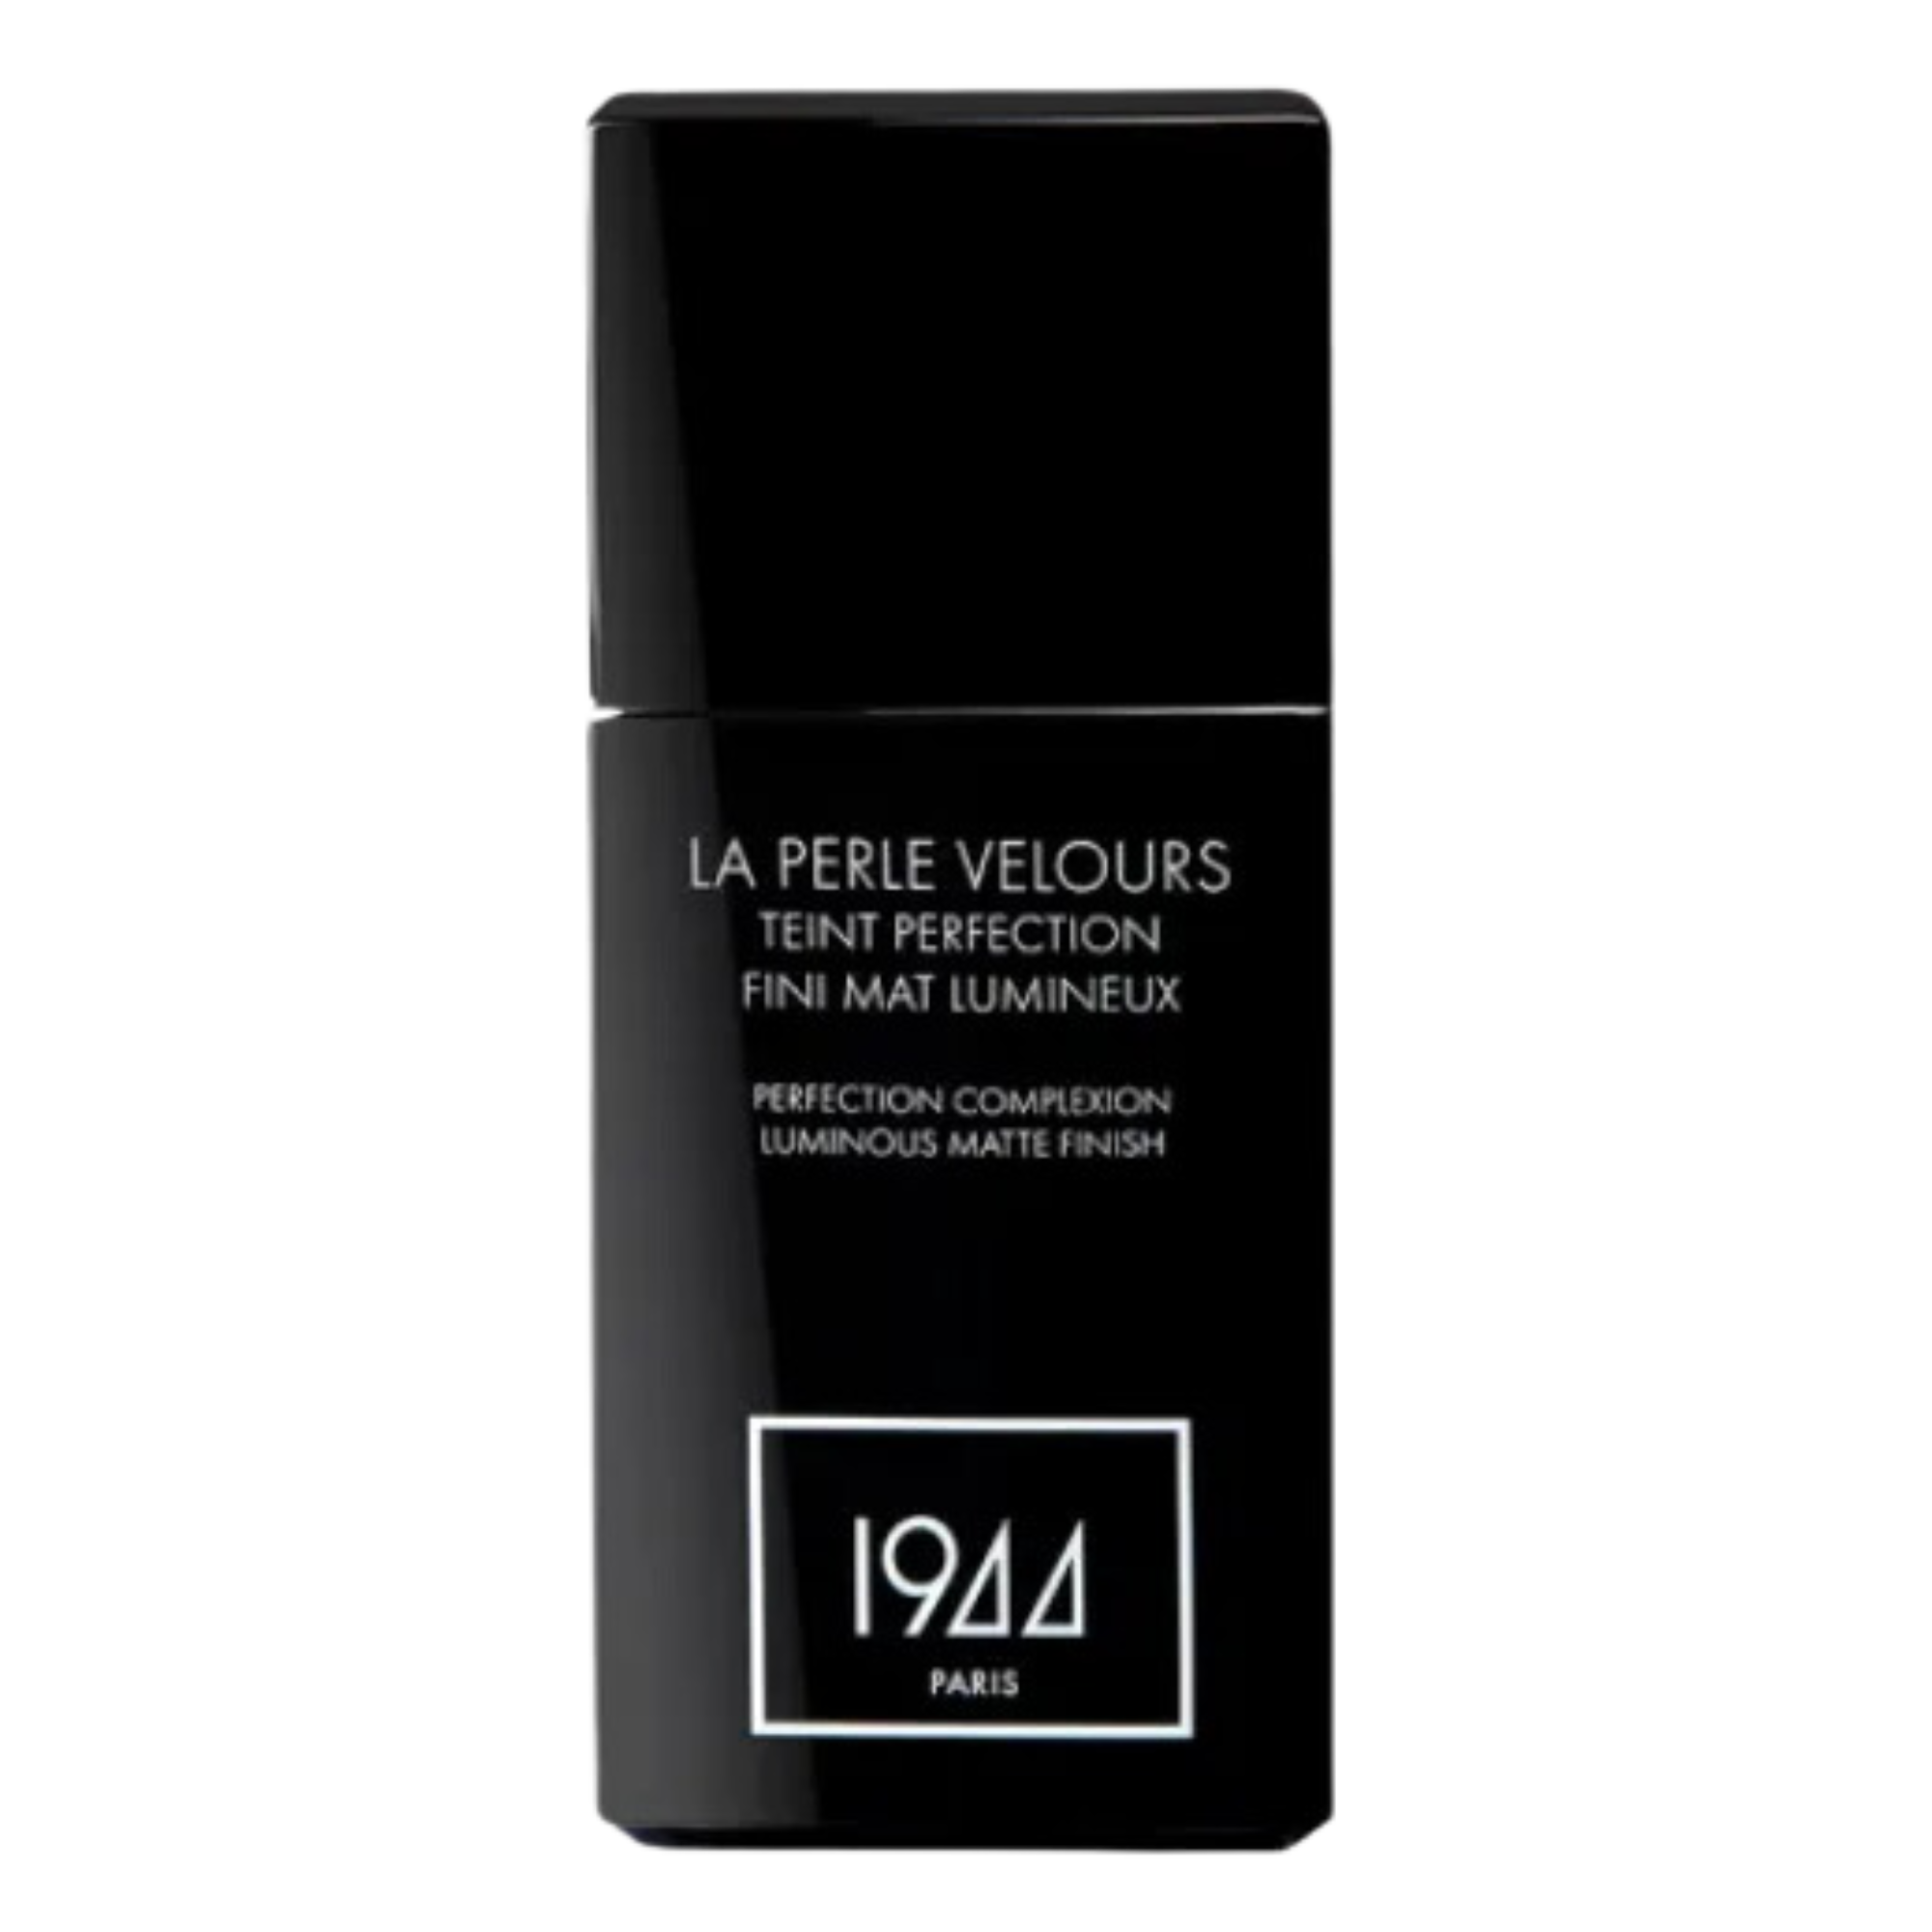 Тональный крем для лица ft204 бежевый мойен 1944 Paris La Perle Velours, 30 мл